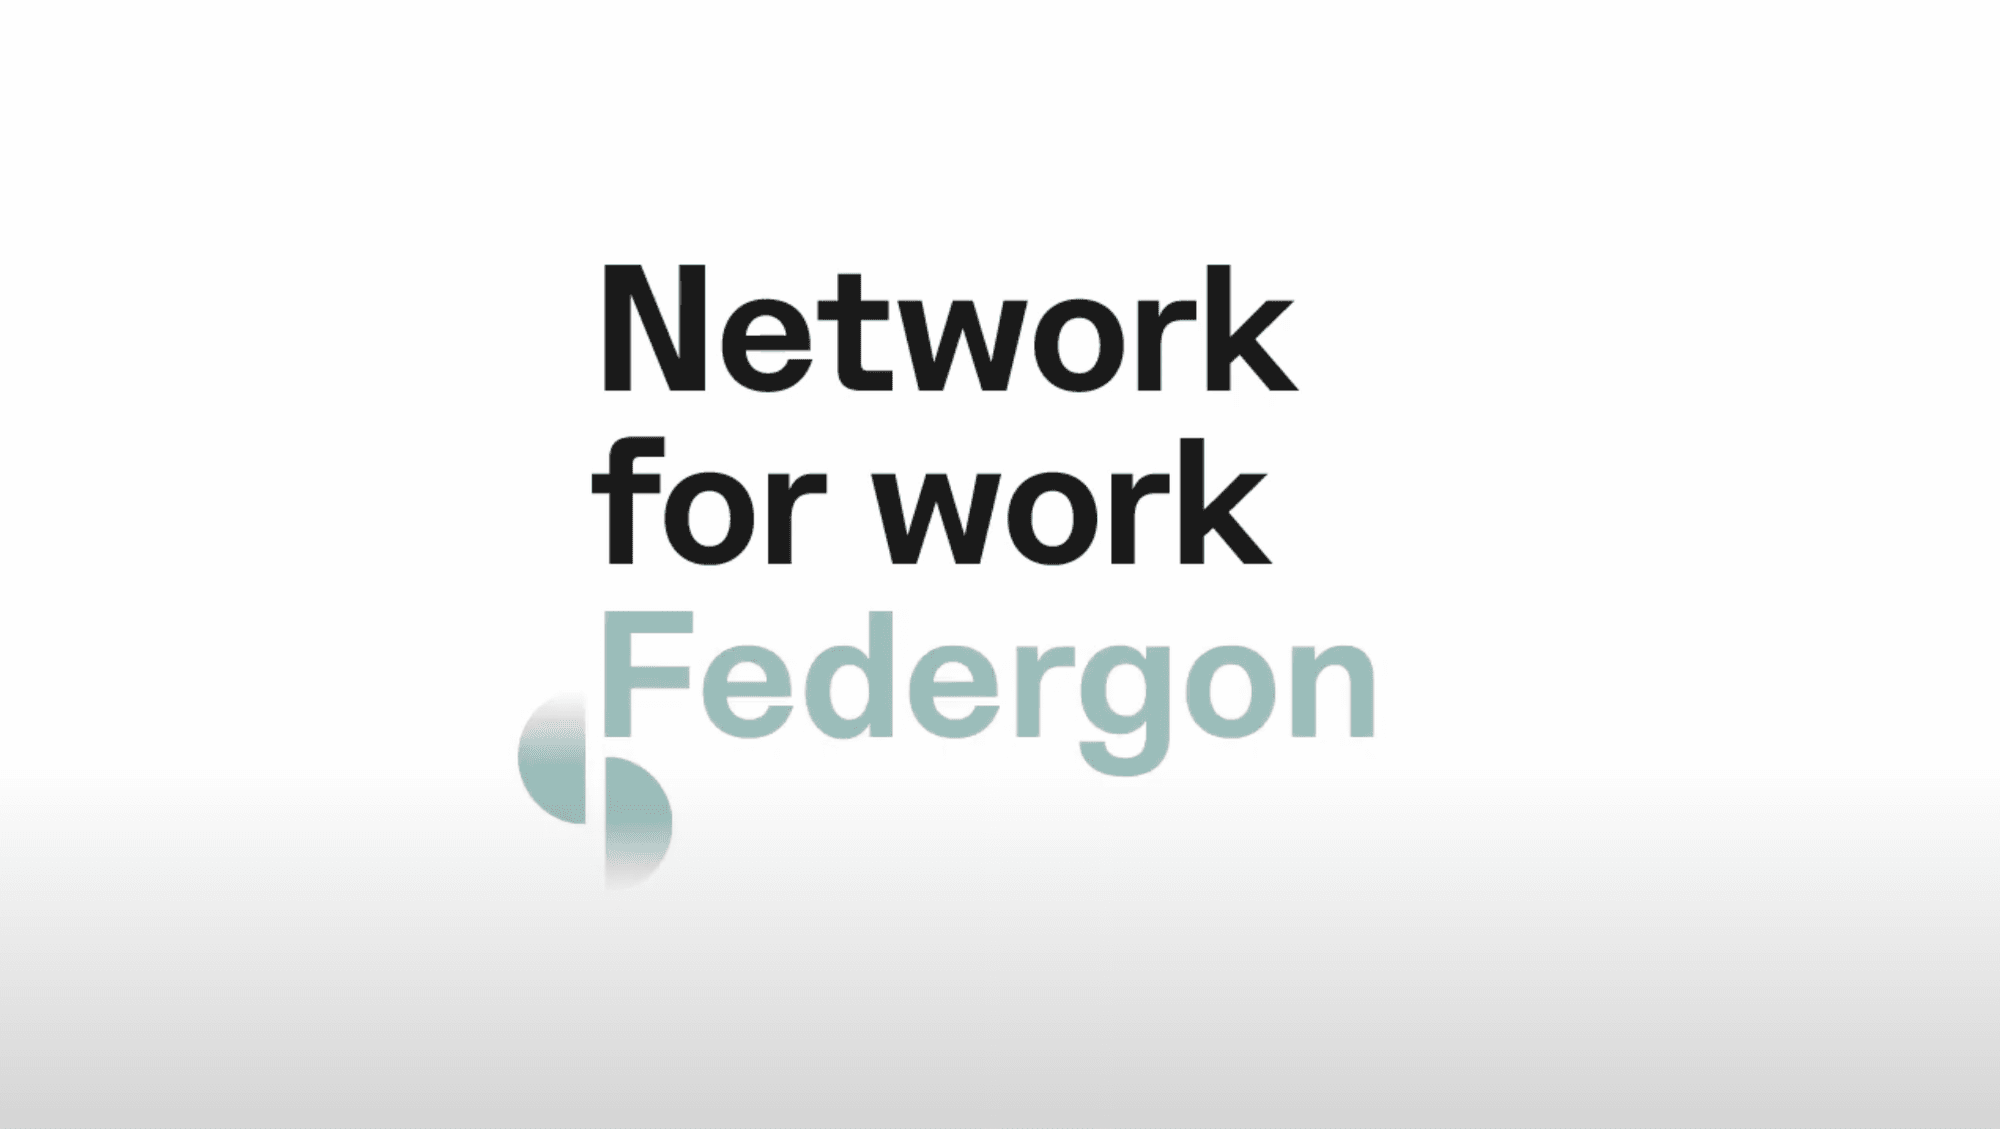 Federgon wil vijf actiepunten voor onze arbeidsmarkt